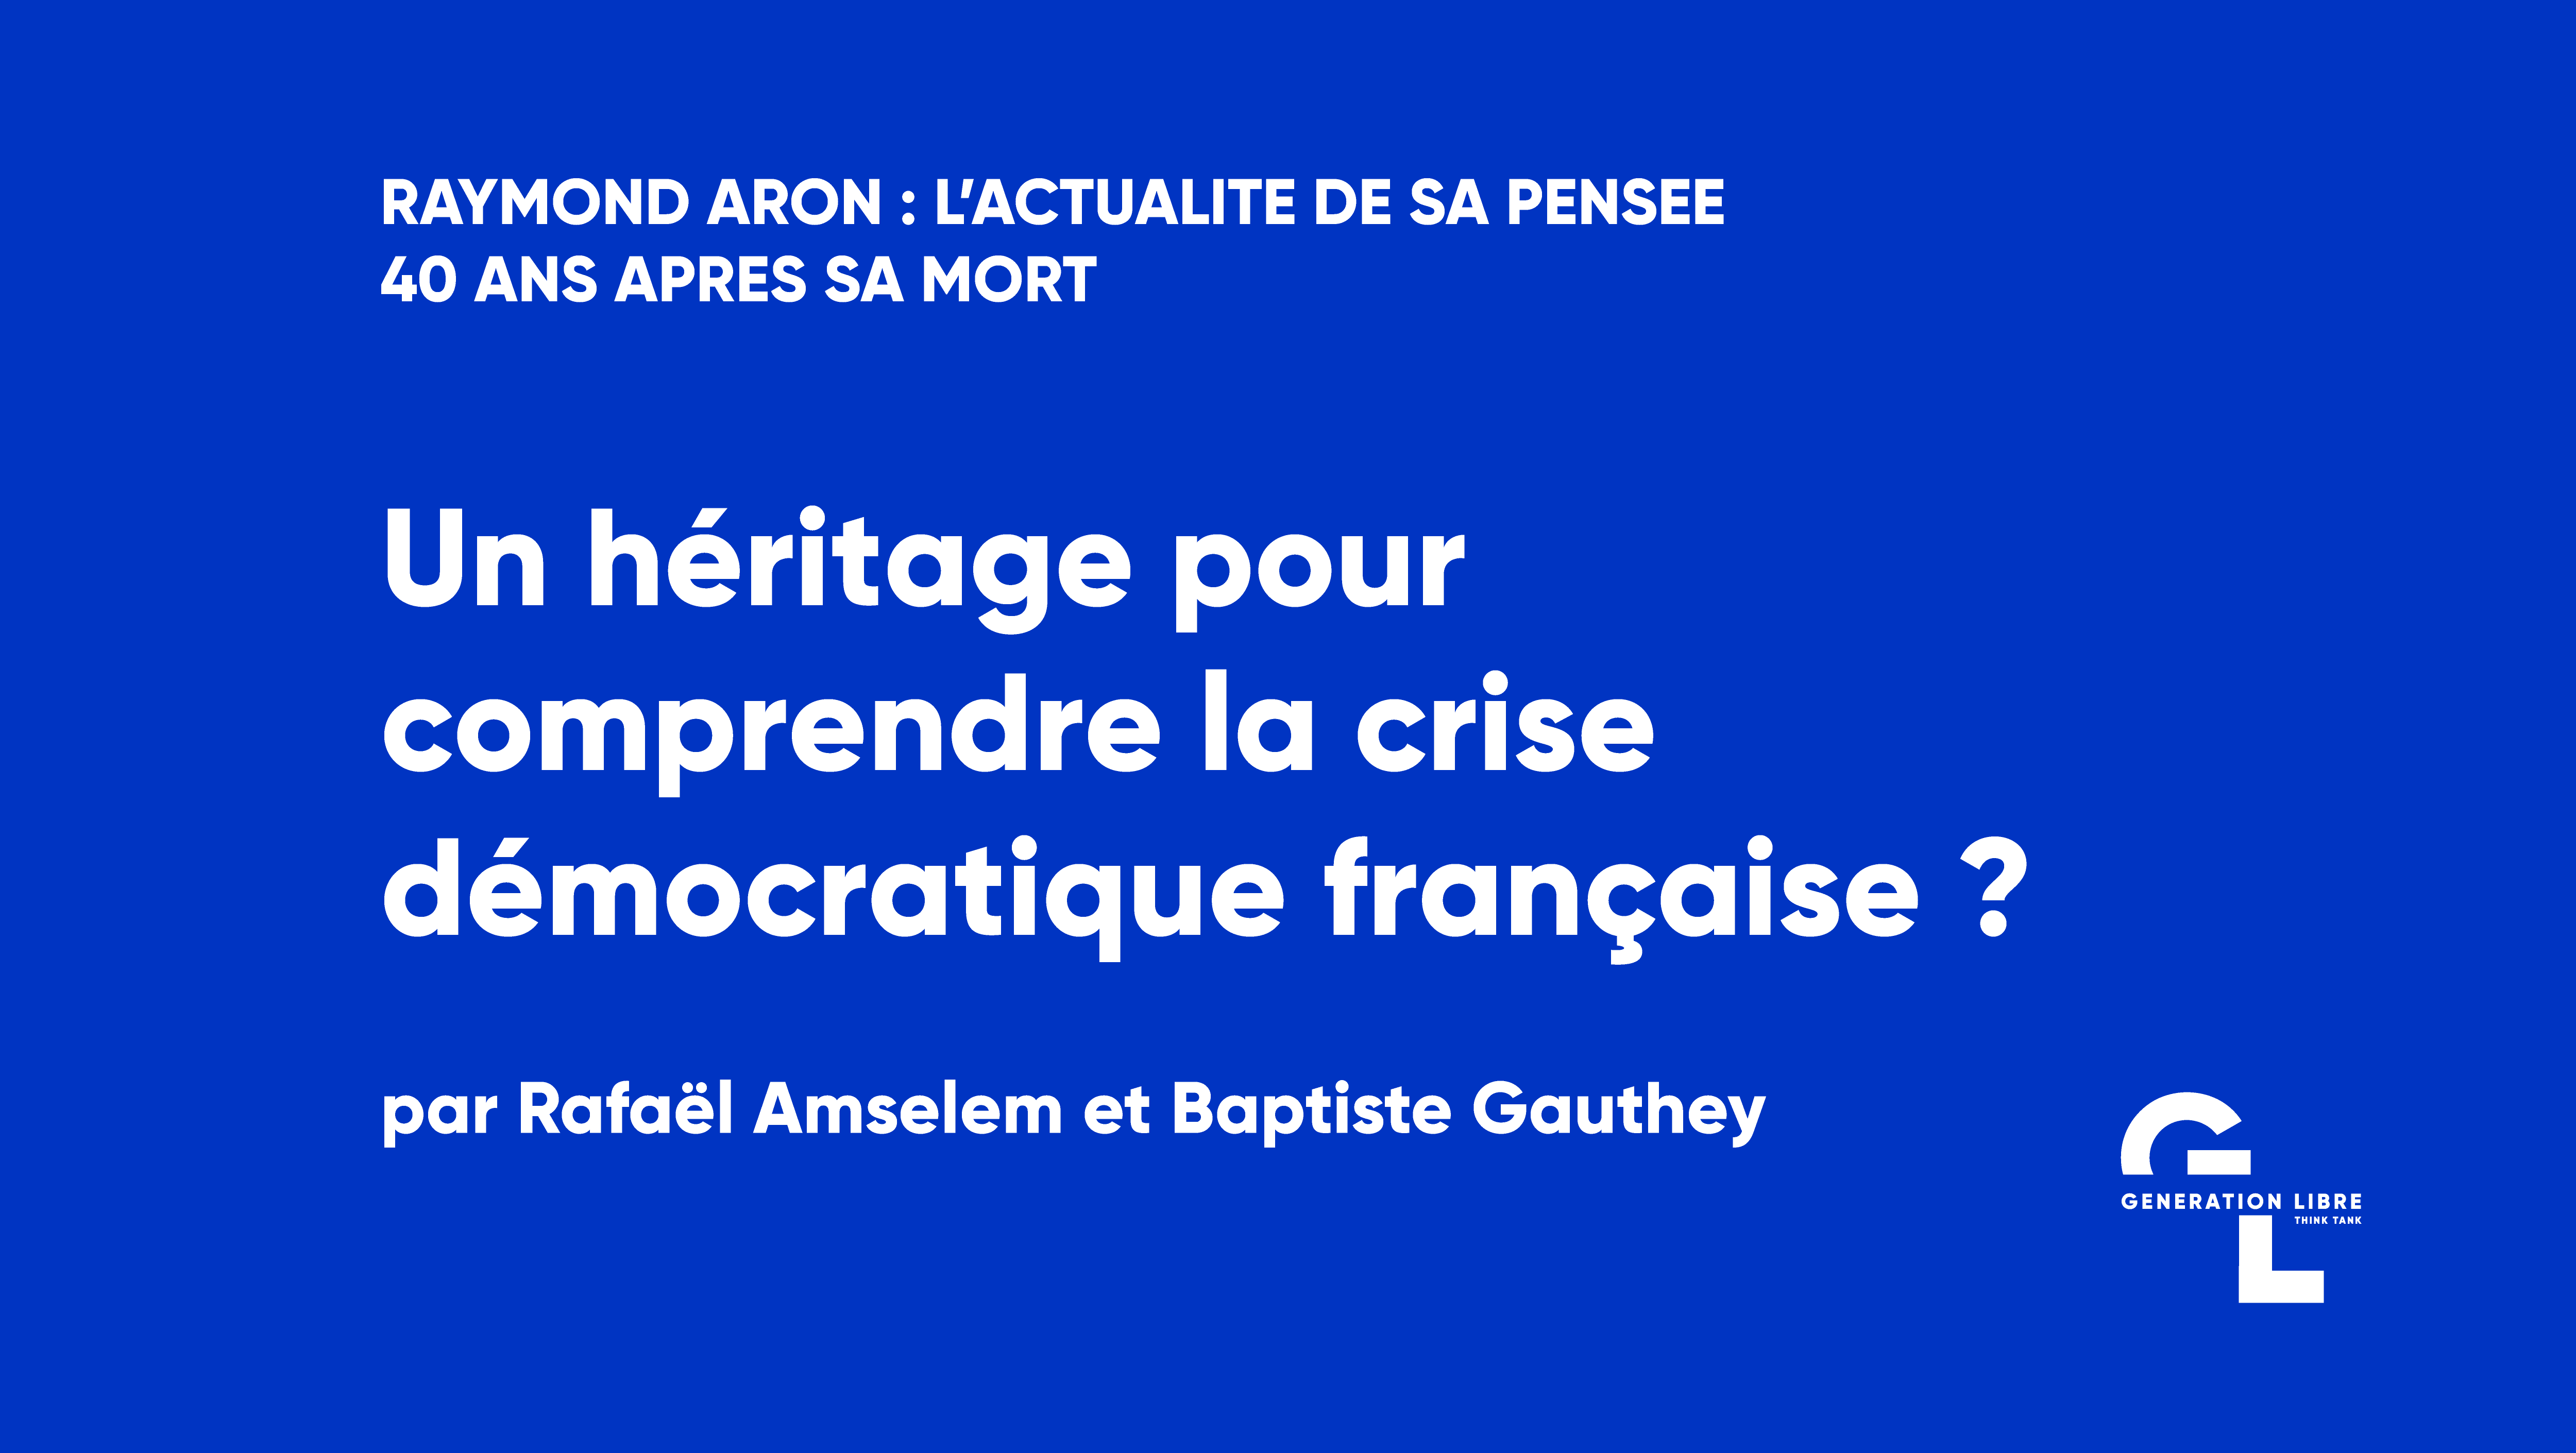 Un héritage pour comprendre la crise démocratique française au XXIème siècle ?